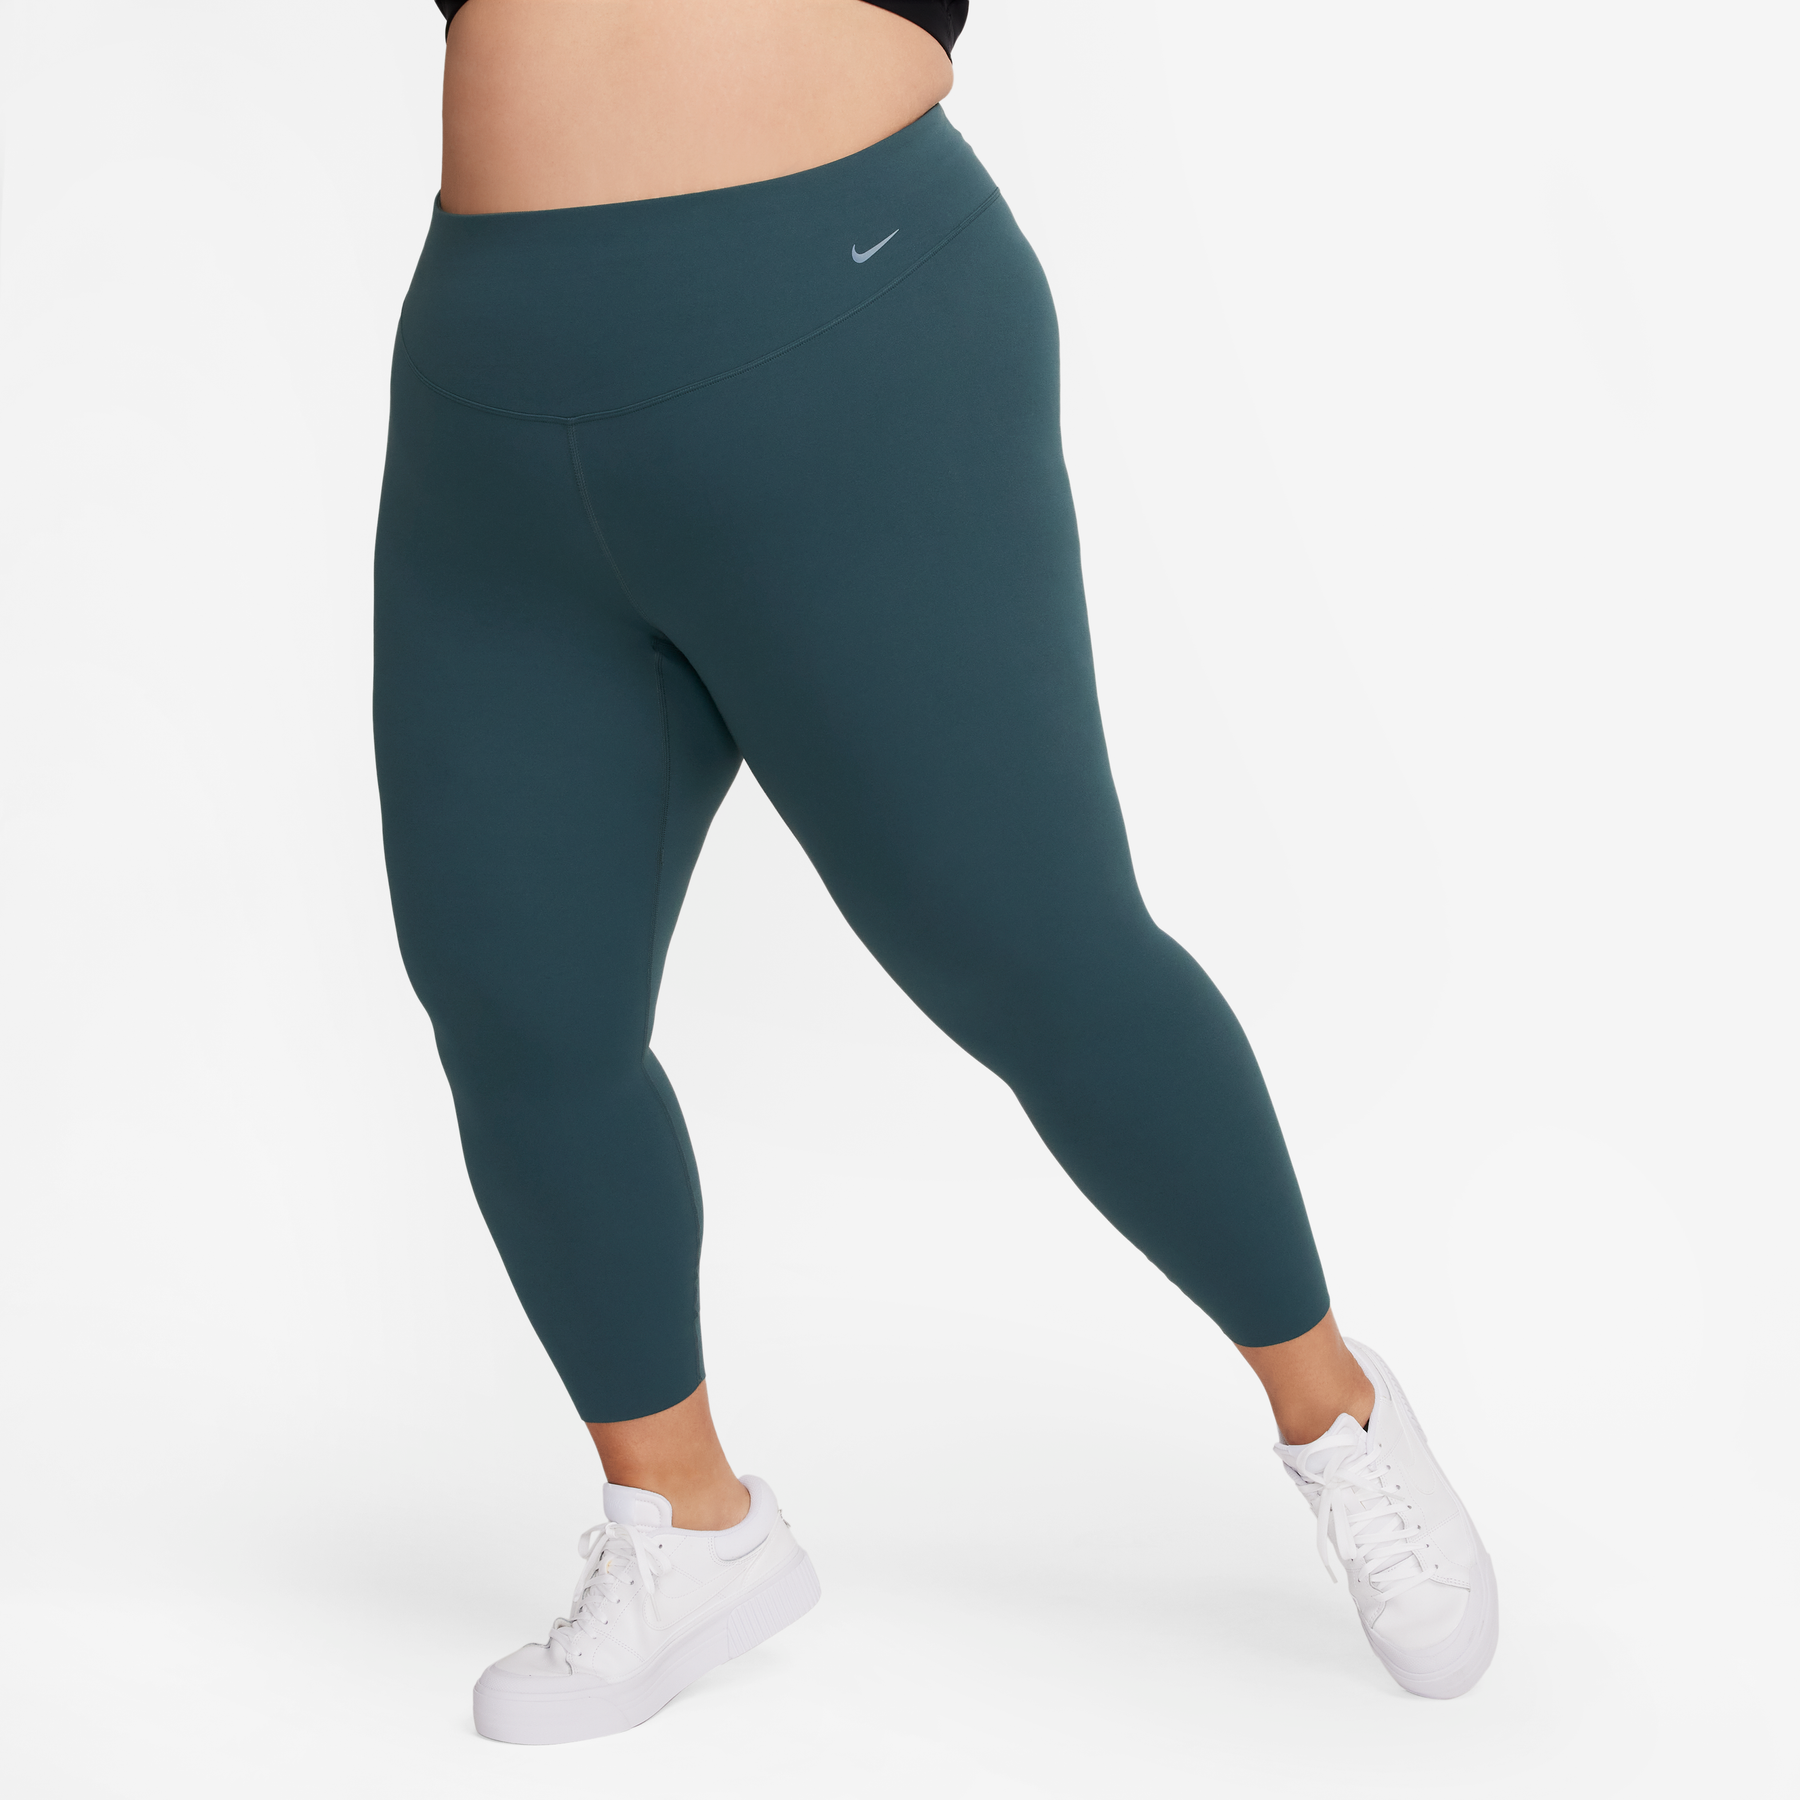 Nike Women's Zenvy Gentle-Support High-Waisted Full-Length Leggings, XXL,  Oil Green